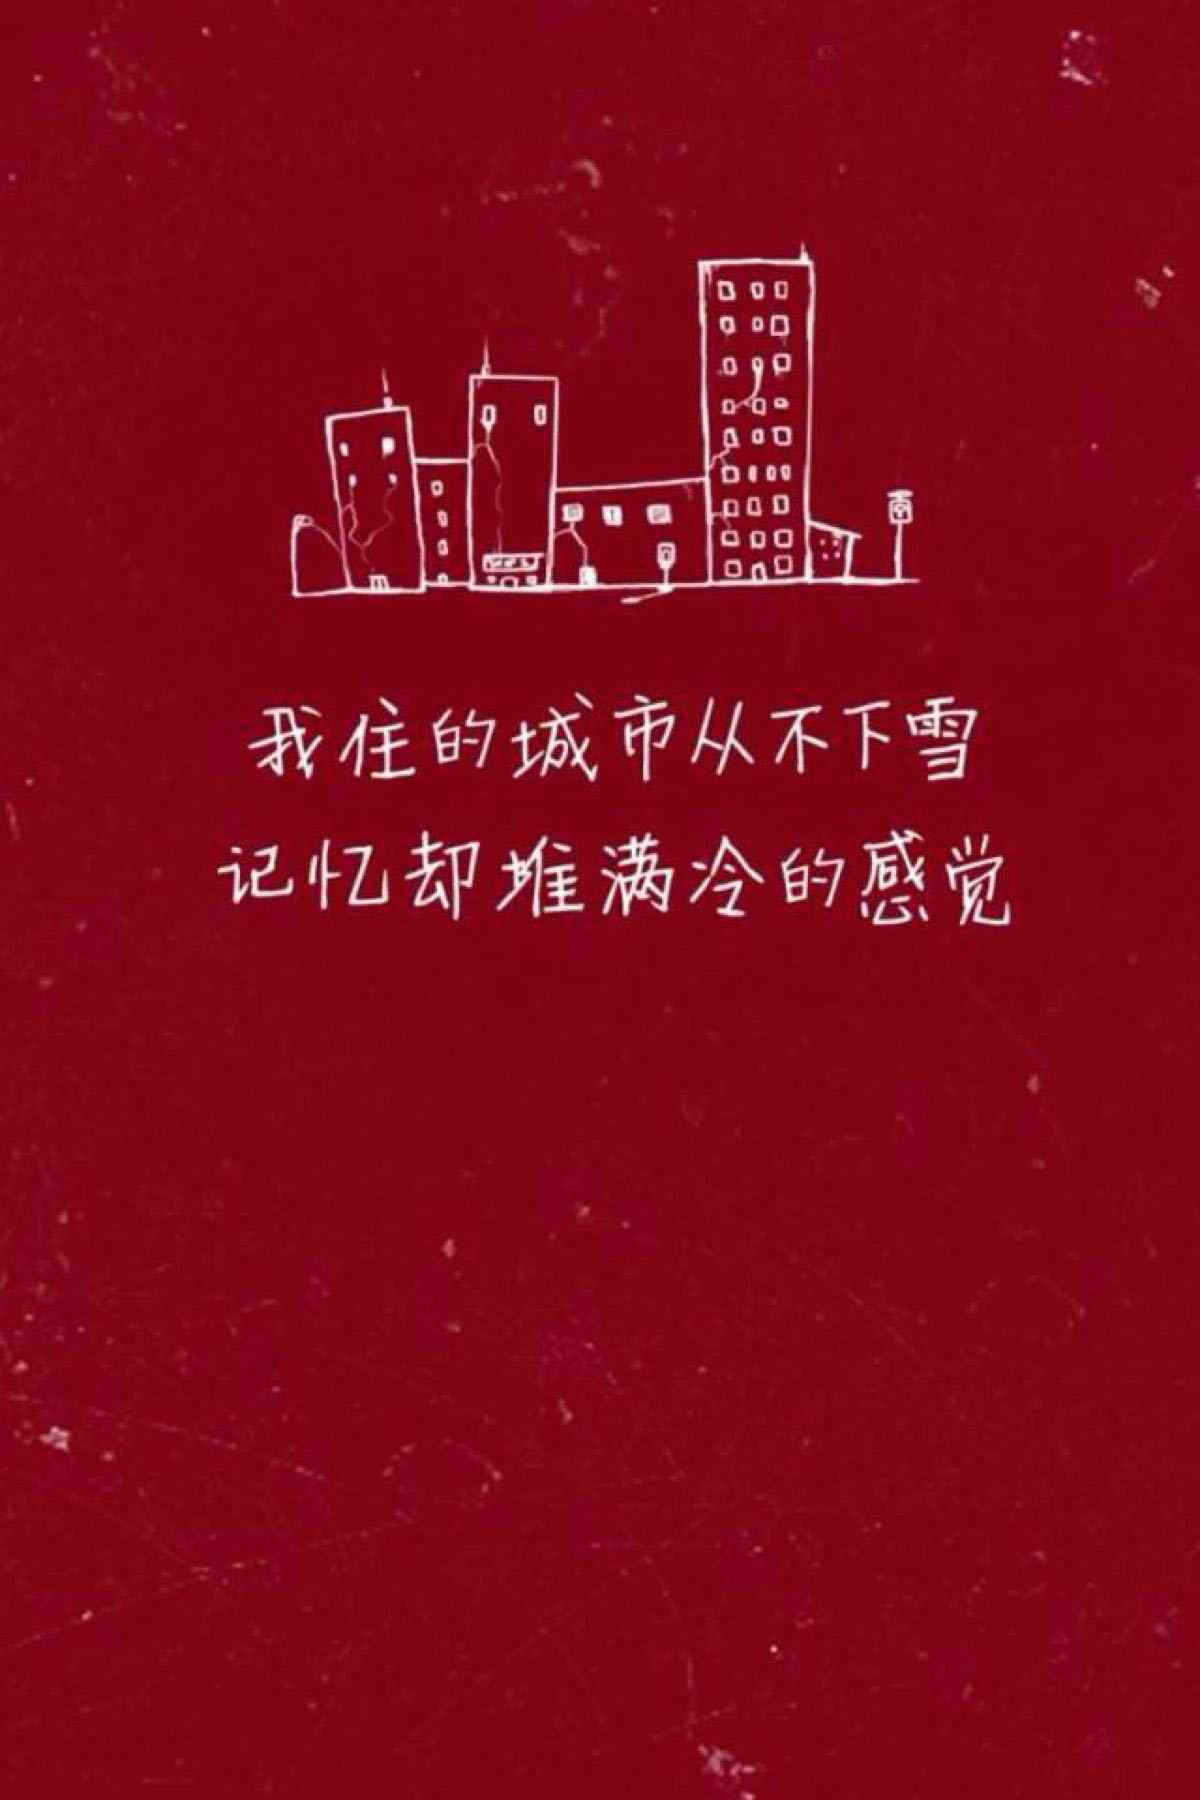 陈奕迅《圣诞结》凄美歌词图片